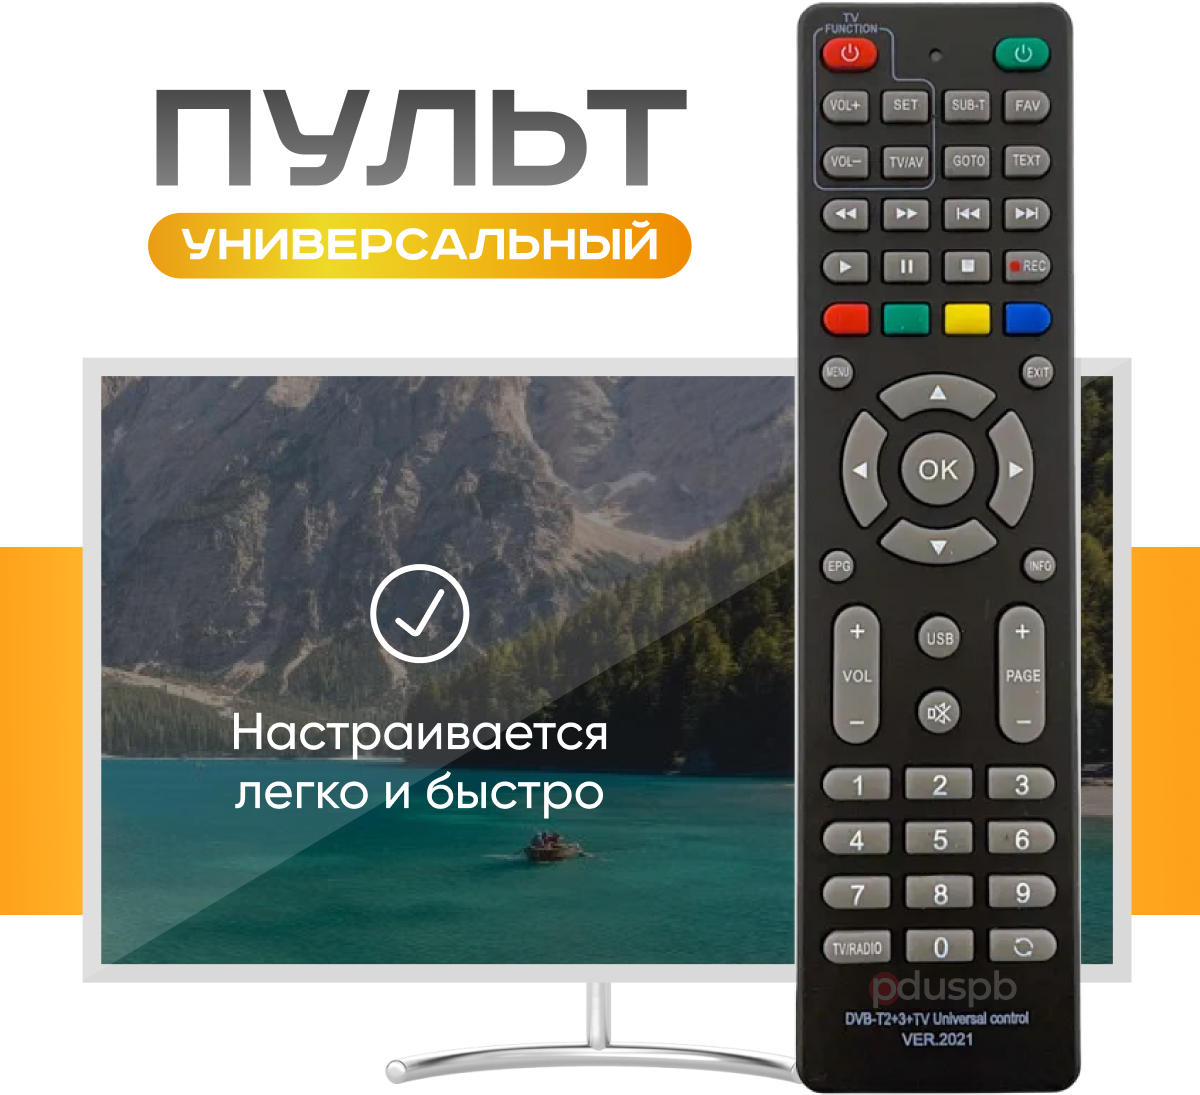 Универсальный пульт DVB-T2+3+TV 2021 для приставок ресиверов dvb-t/t2/c  для управления ТВ